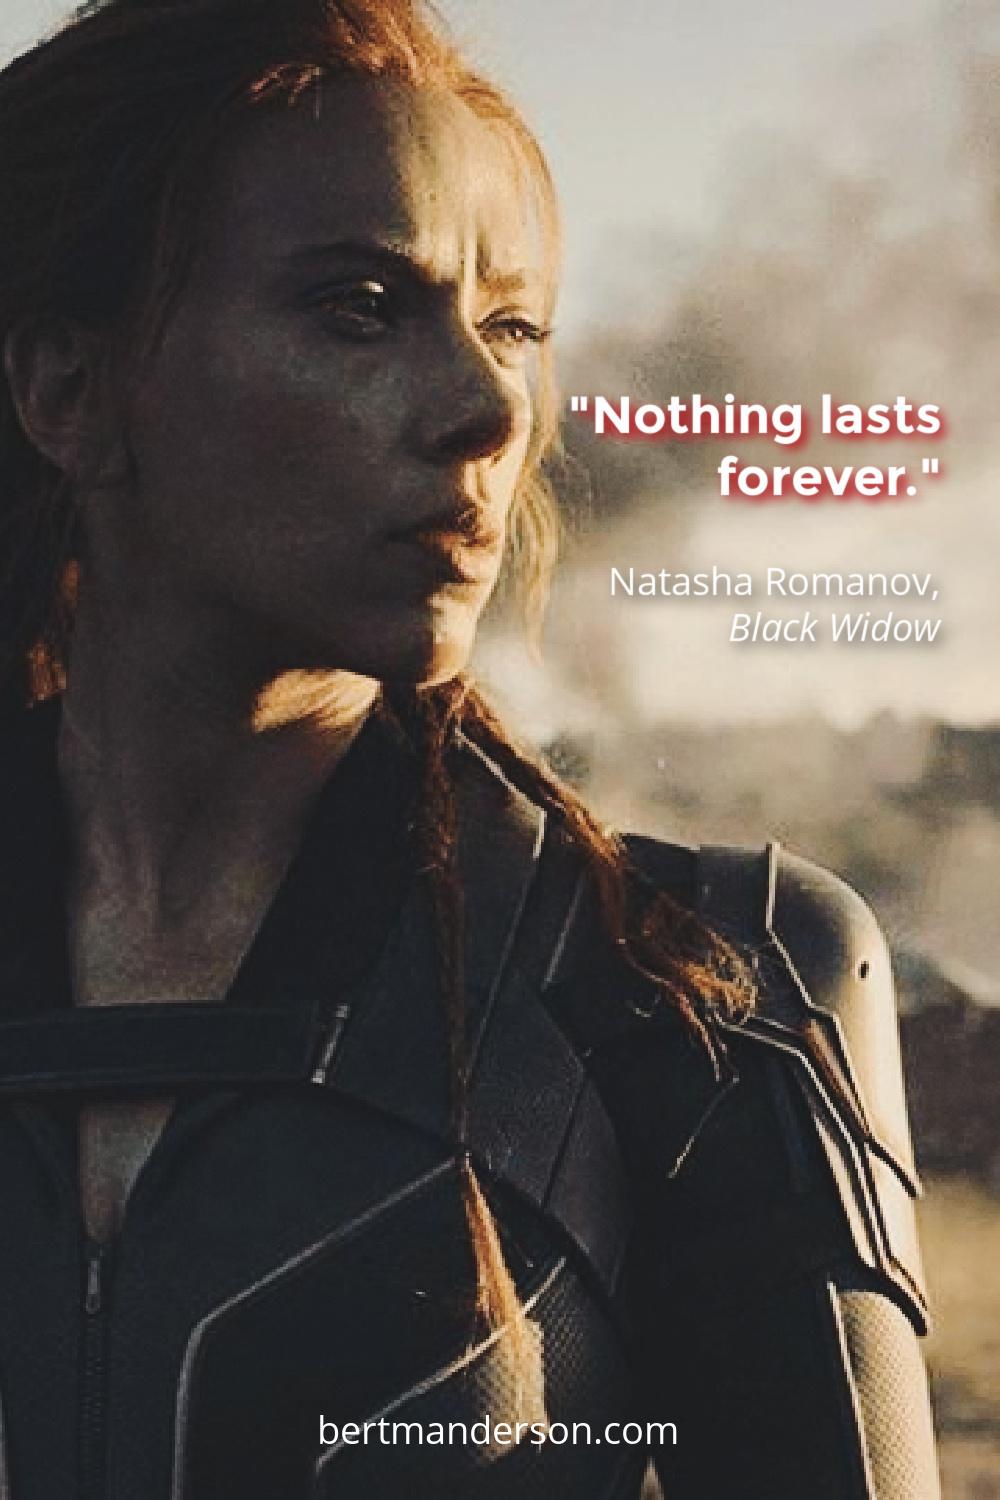 Nothing lasts forever. Natasha Romanov quotes, #BlackWidow